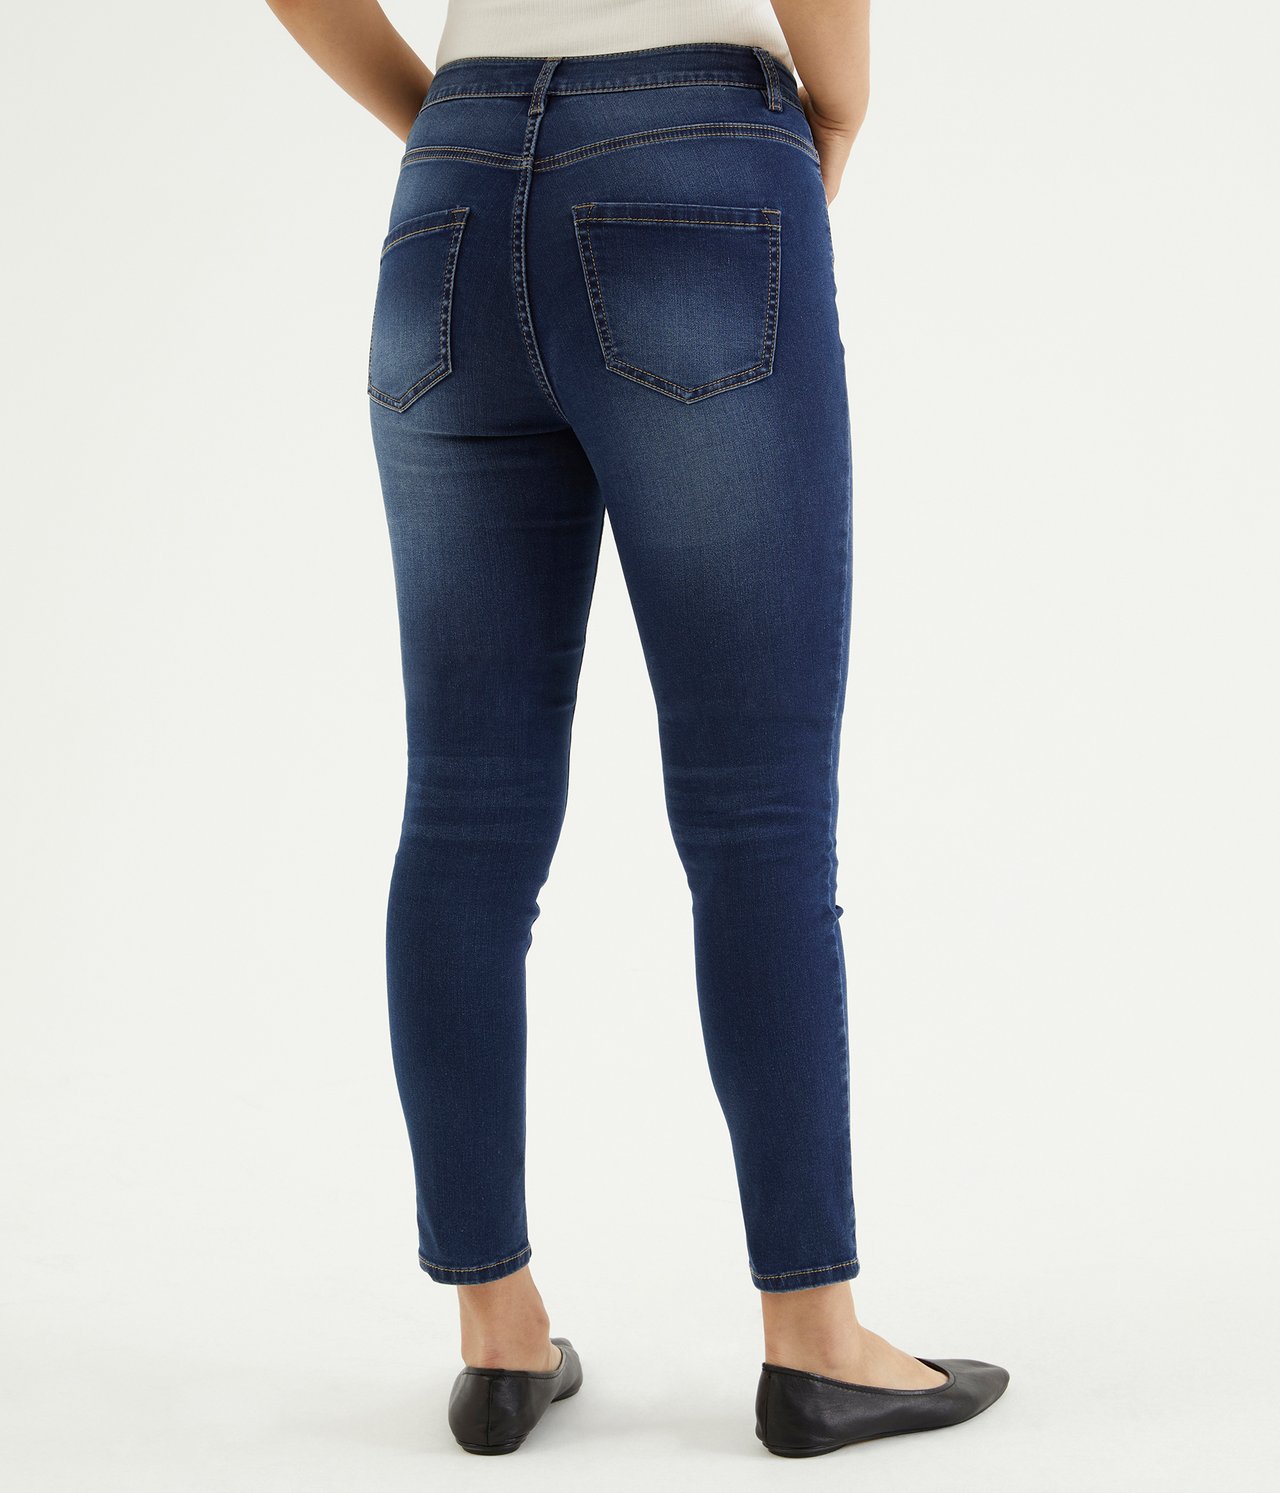 Super slim jeans short leg Tumma denimi - null - 3